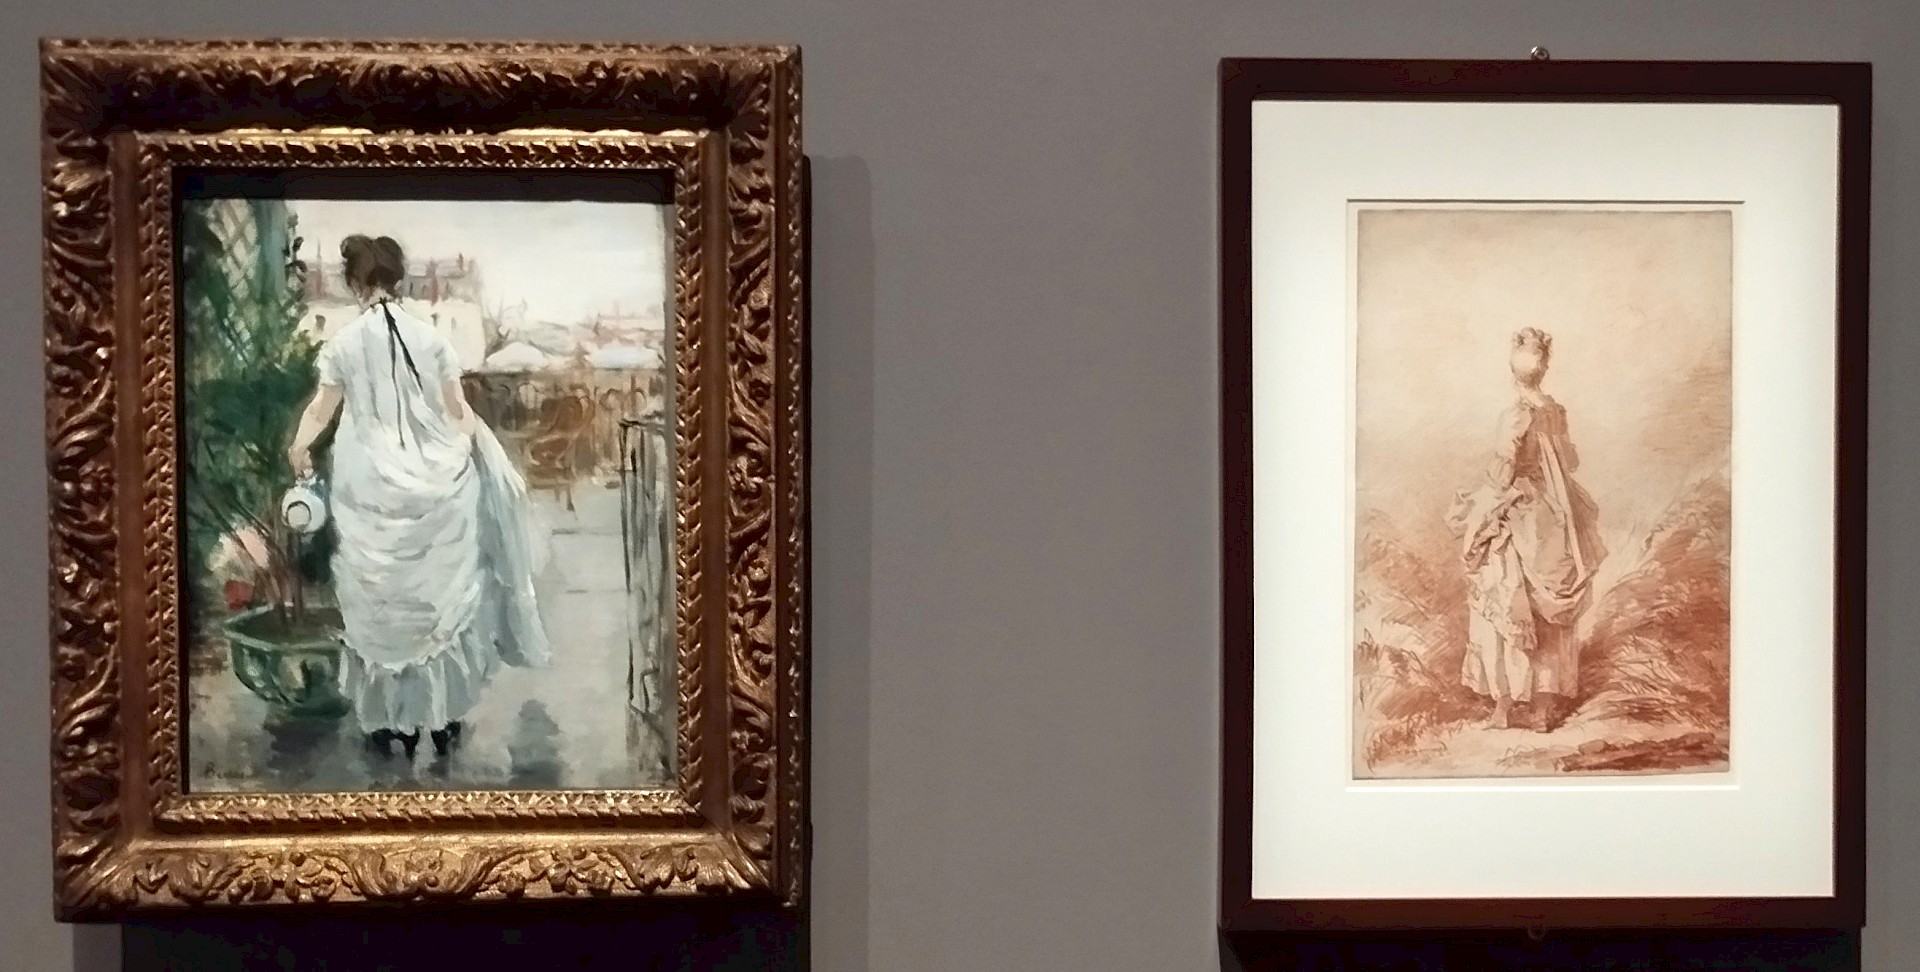 <p>Comment Berthe Morisot s'inspire de Fragonard. Copier c'est bien et ça apprend mais réinterpréter, c'est mieux.</p>